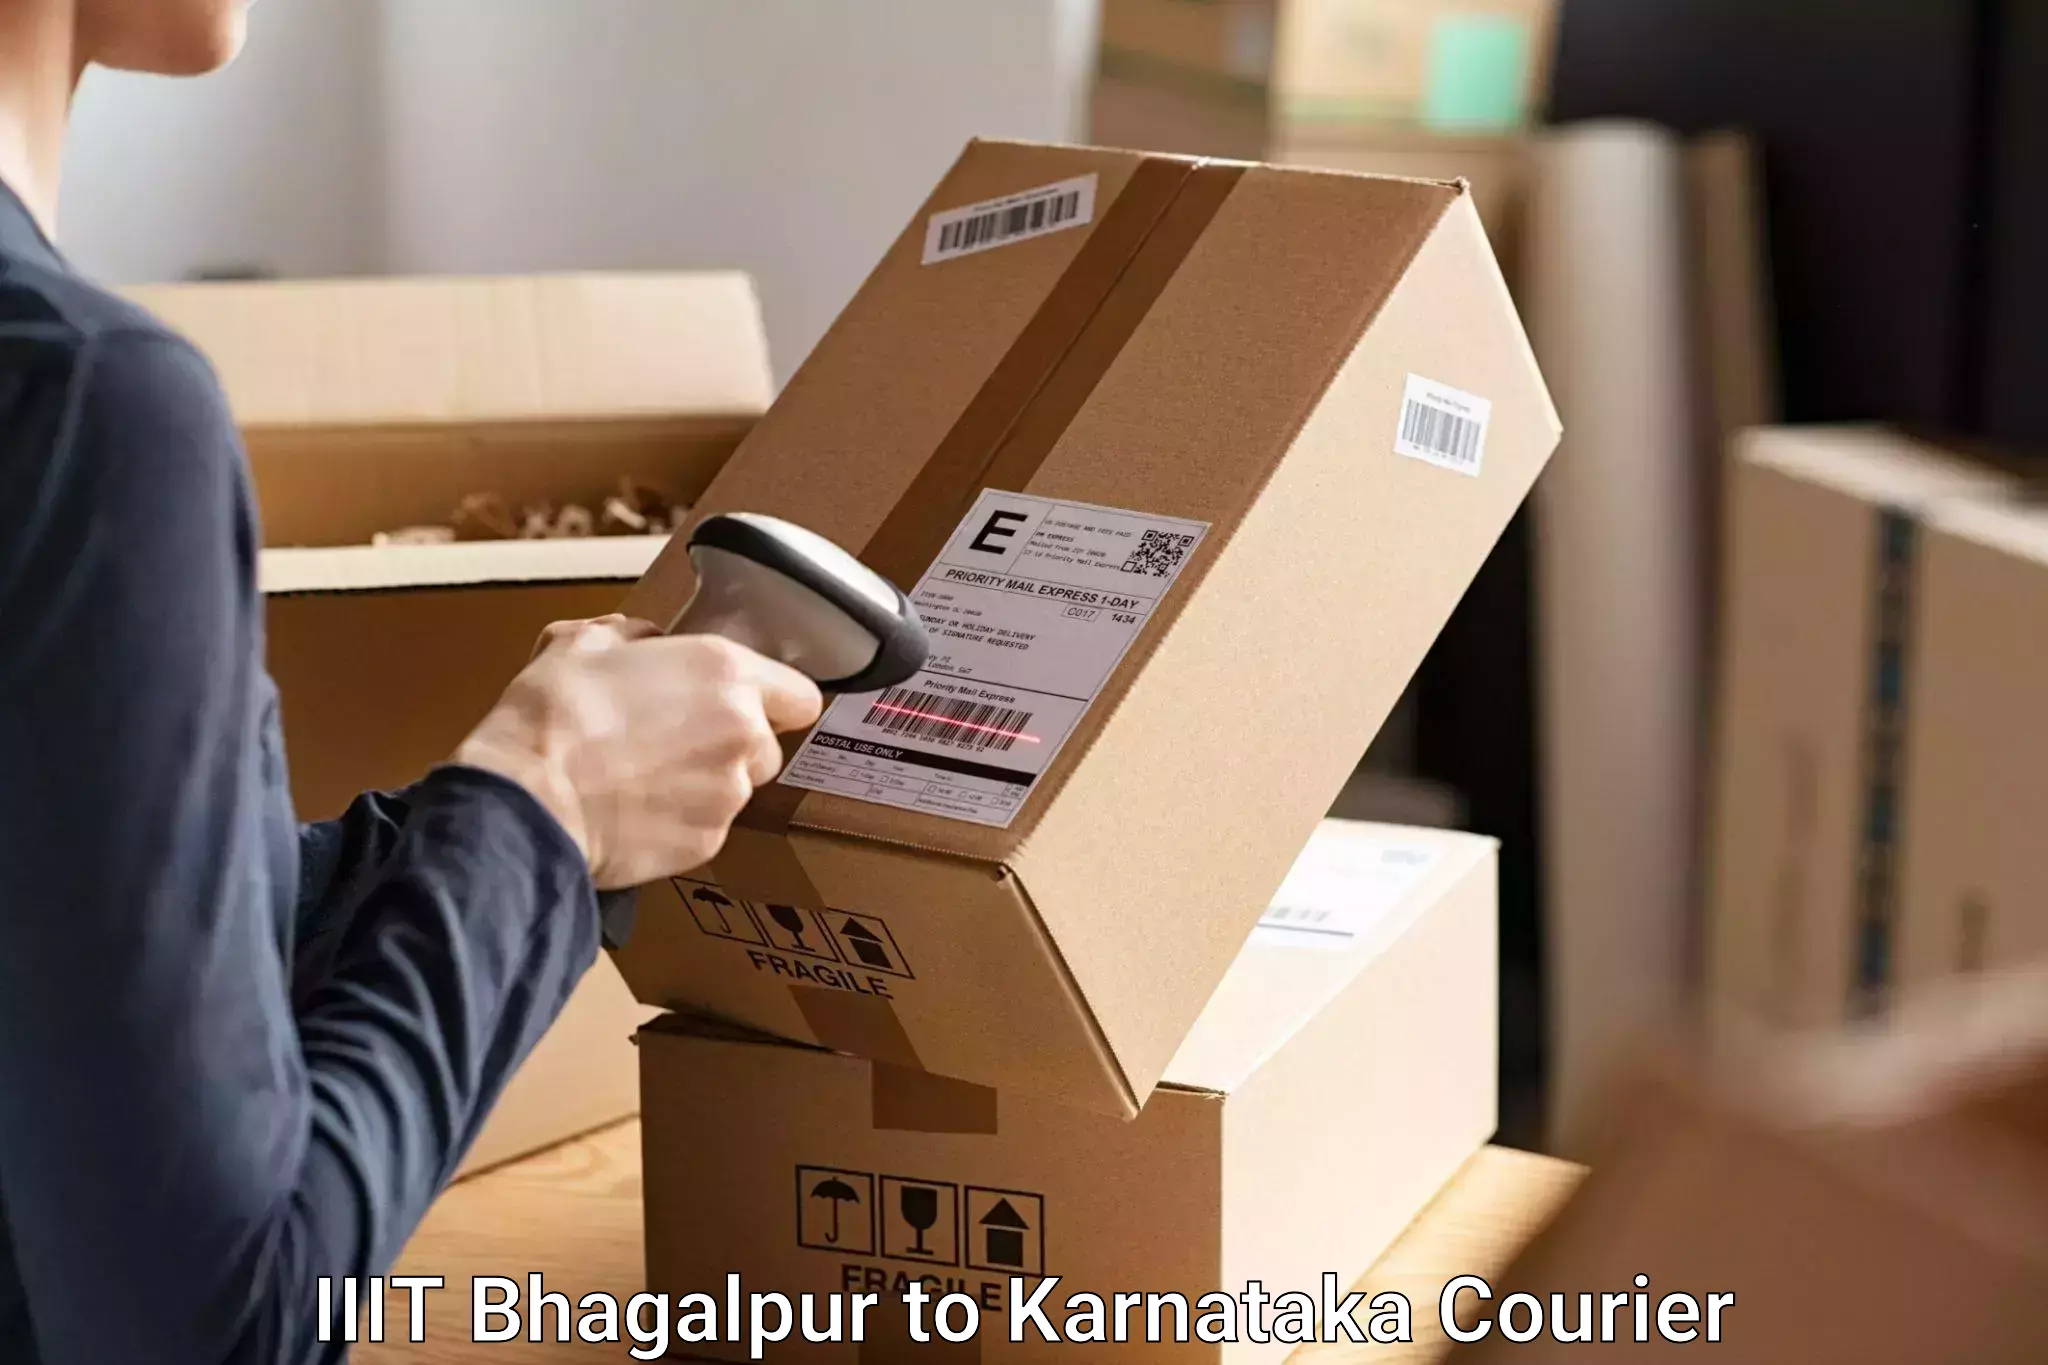 Luggage delivery network IIIT Bhagalpur to Ranebennur